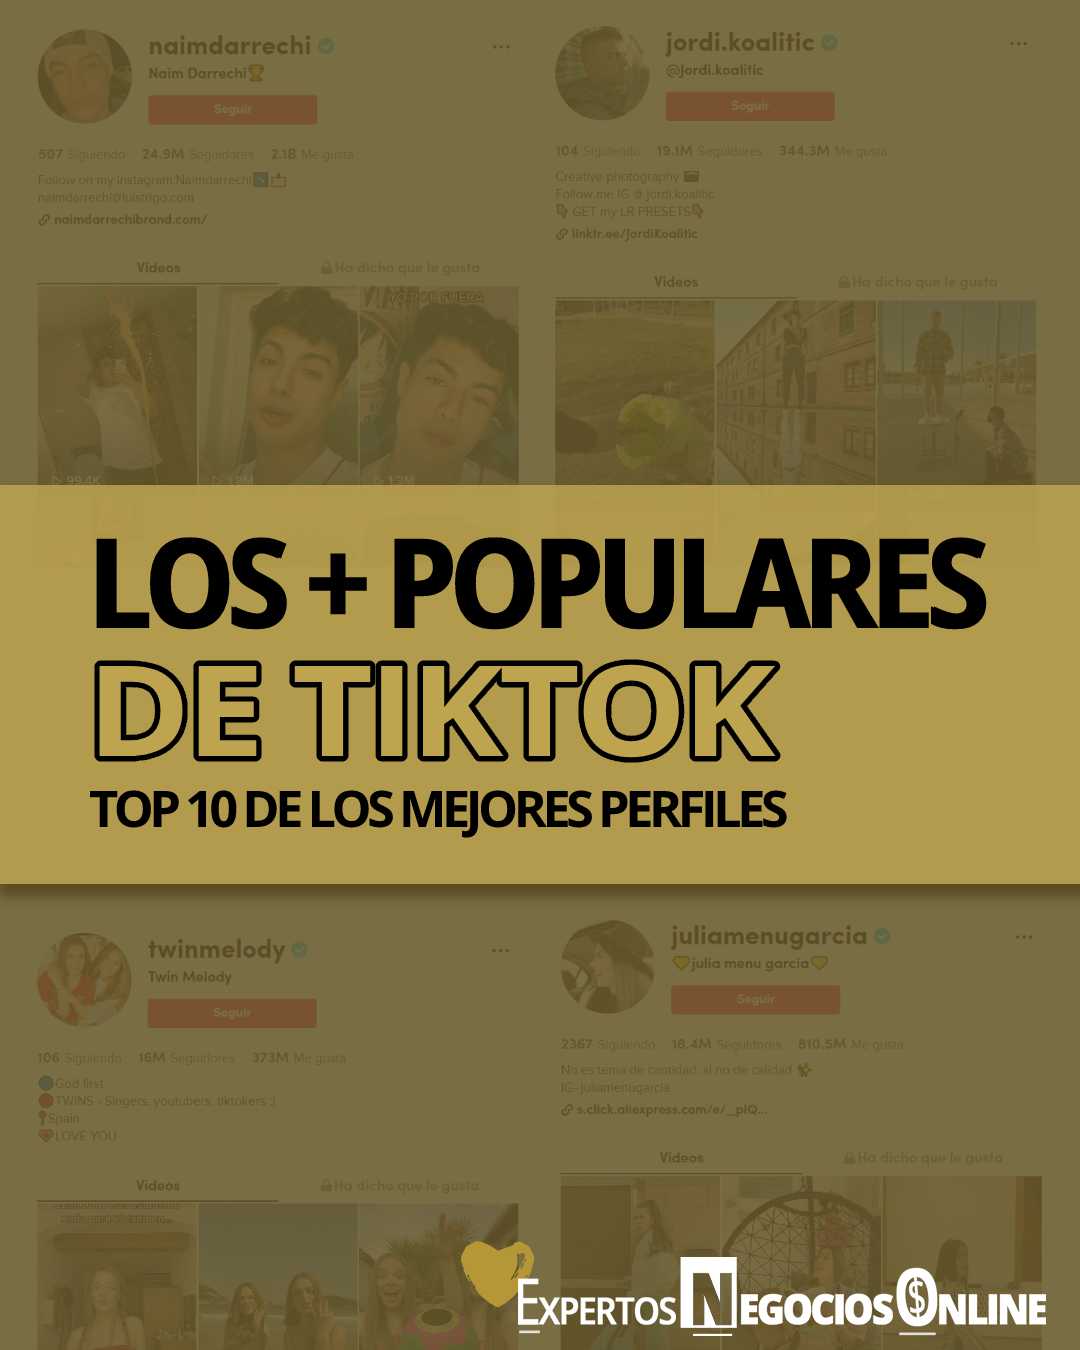 Los mejores perfiles de TikTok en español - las cuentas más populares